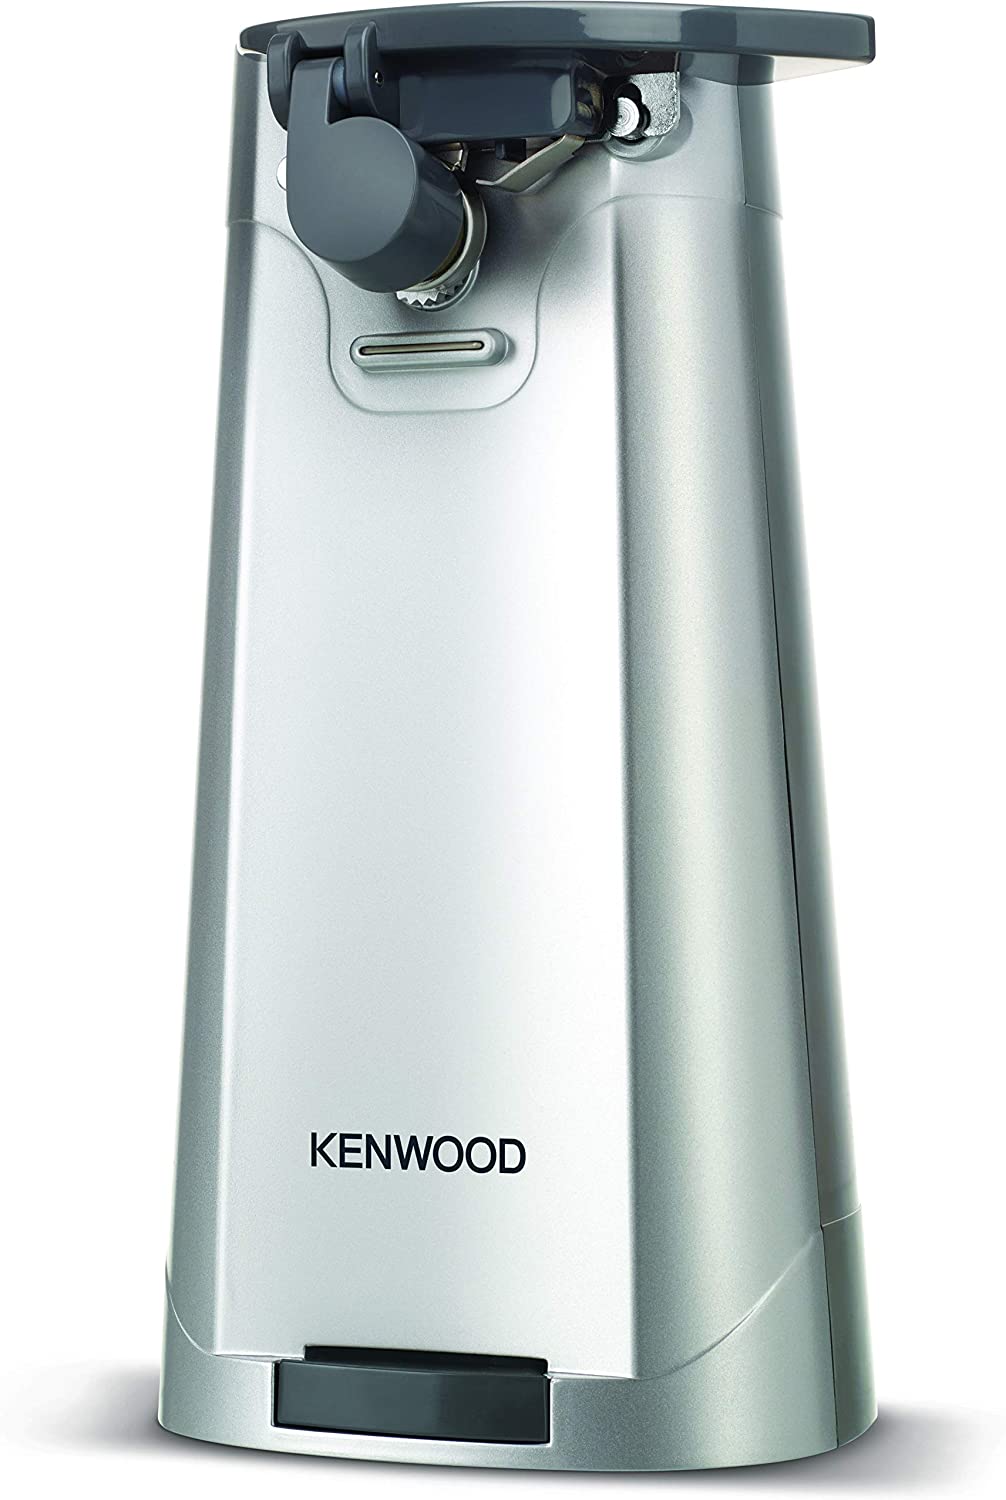 Kenwood Multi-Purpose Electric Can Opener – Carlos | Dosenöffner